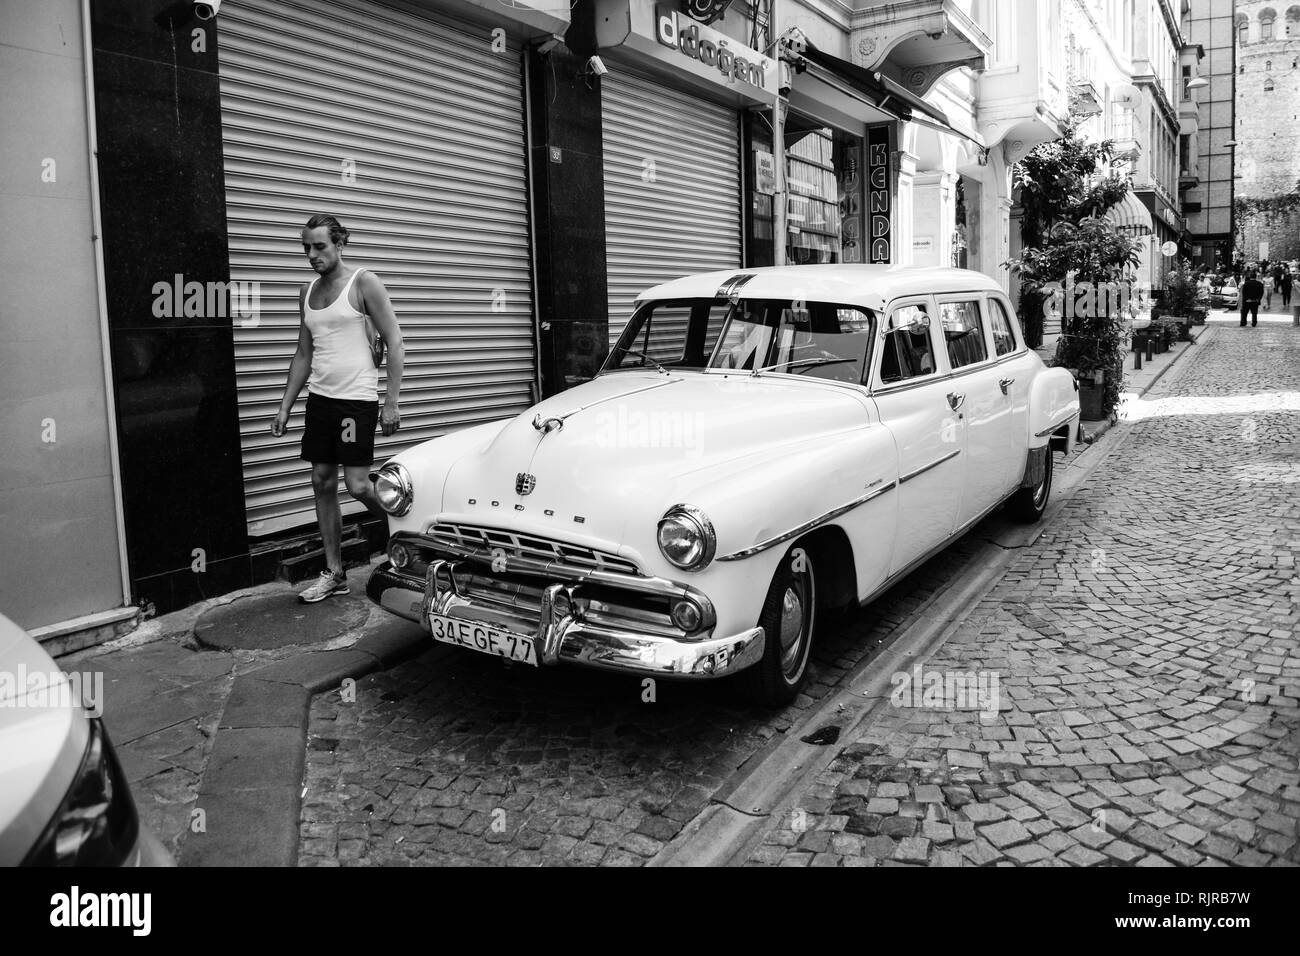 Ein altes Auto und ein gehender Mann an kuledibi Bezirk von Istanbul, Türkei. Europäischen Seite. Stockfoto